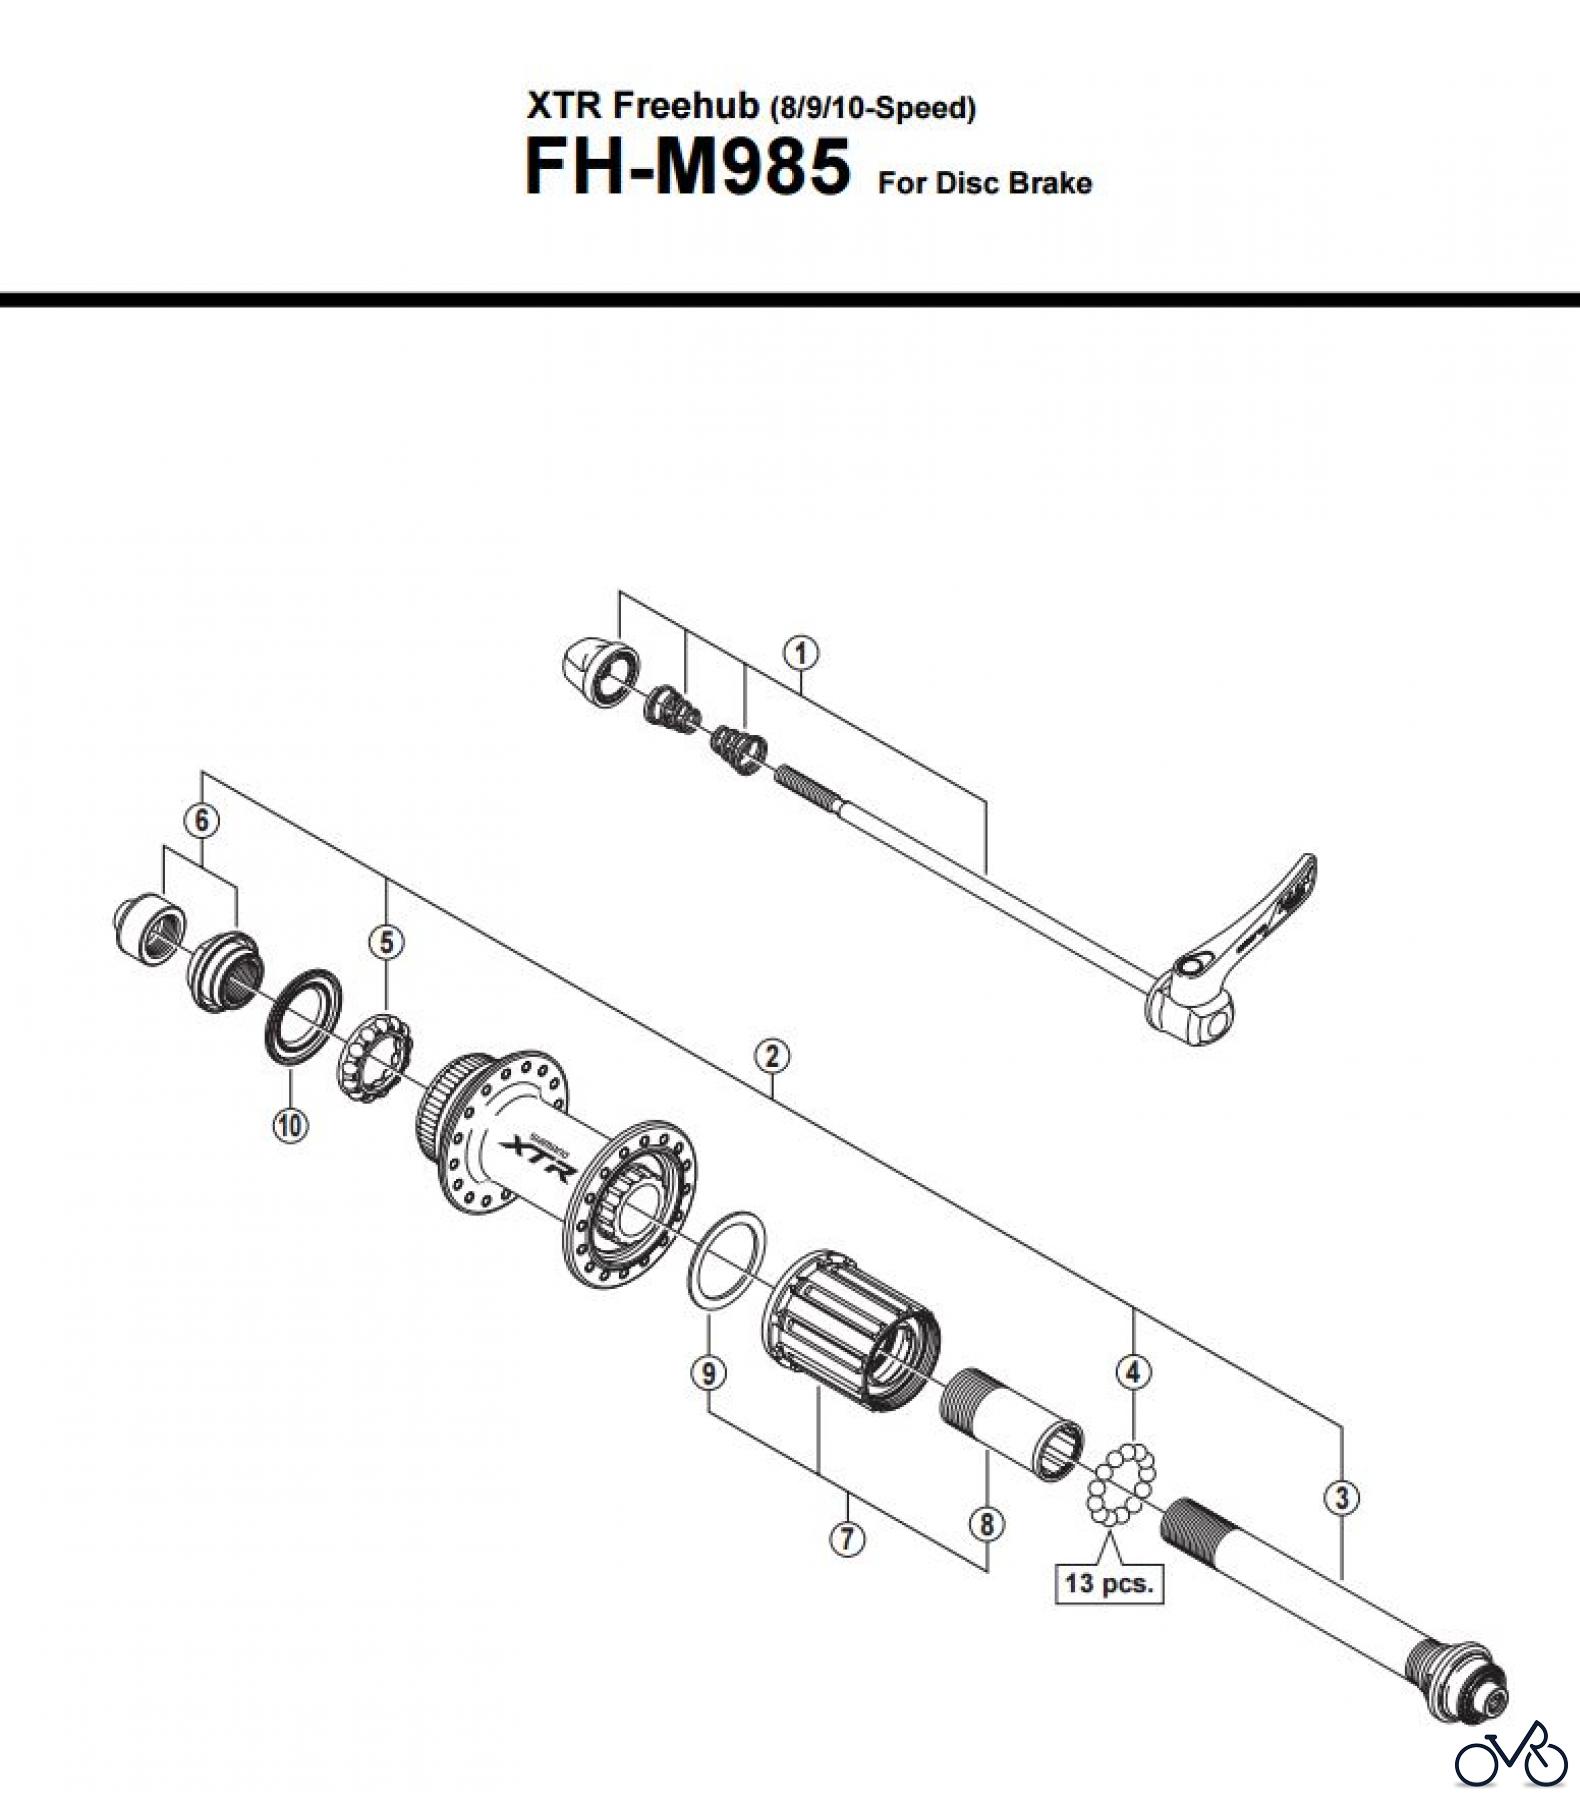  Shimano FH Free Hub - Freilaufnabe FH-M985 -3012_v1 XTR Freehub (8/9/10-Speed